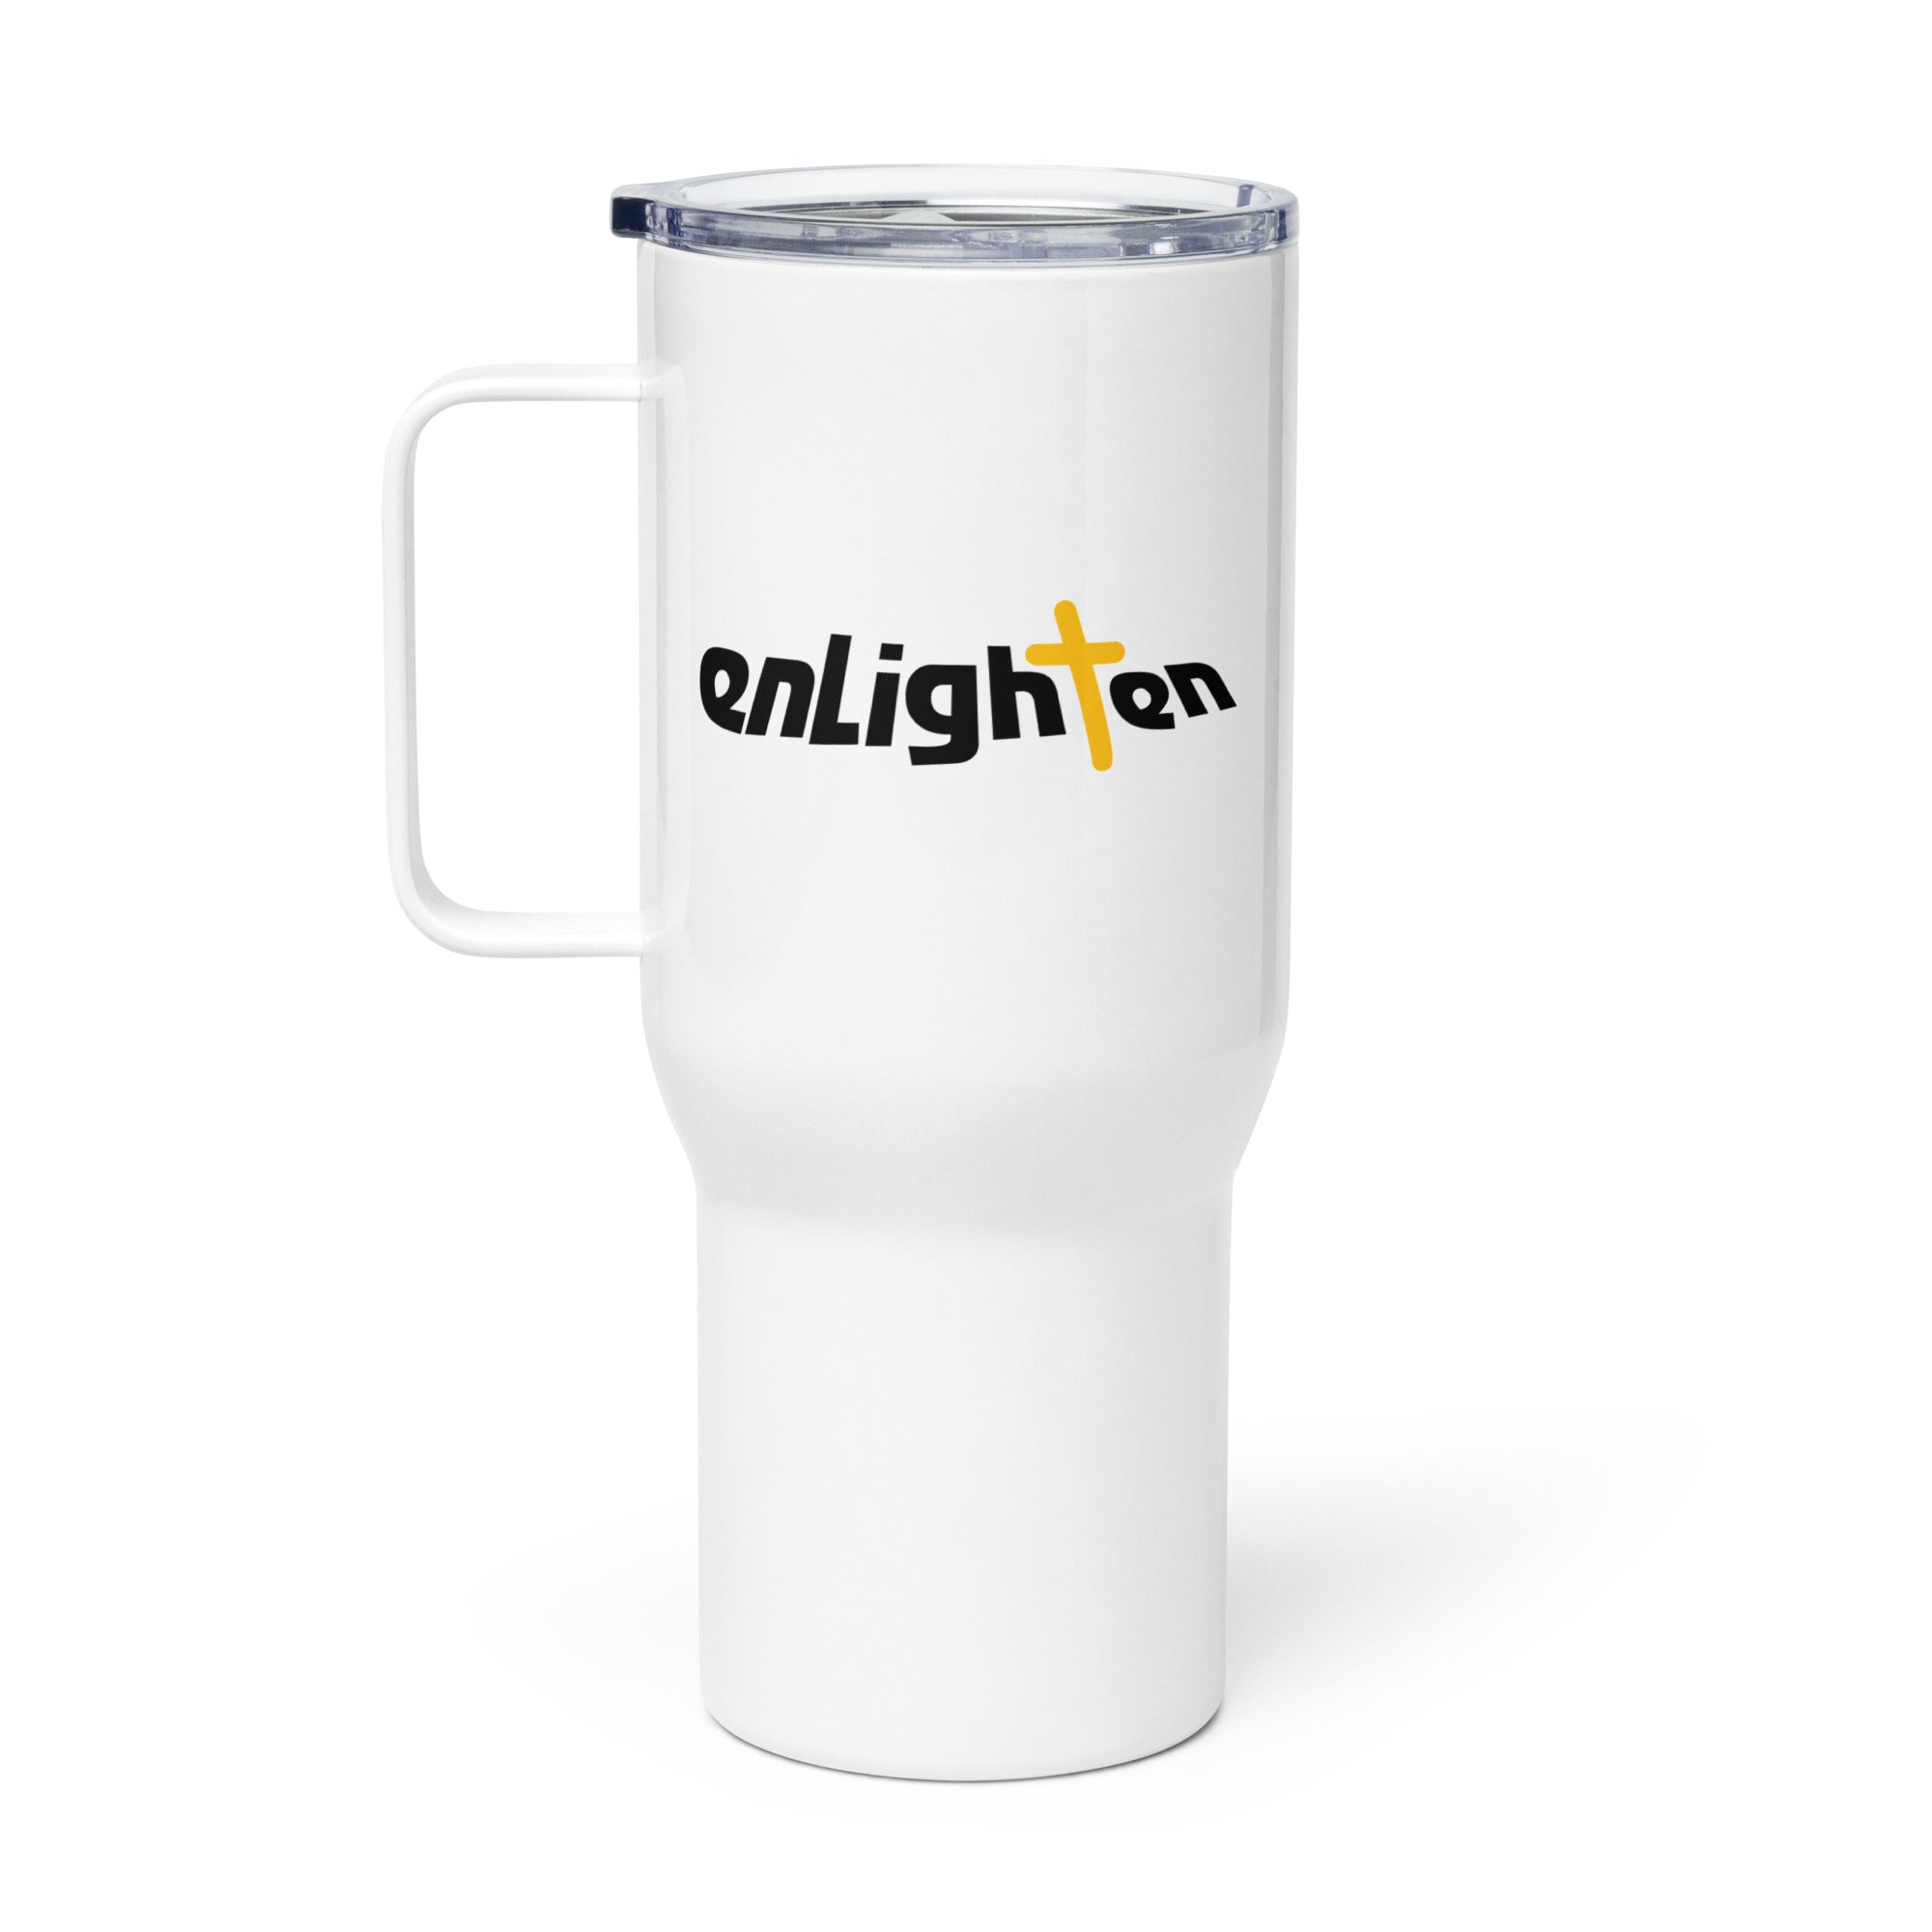 Enlighten: Travel Mug